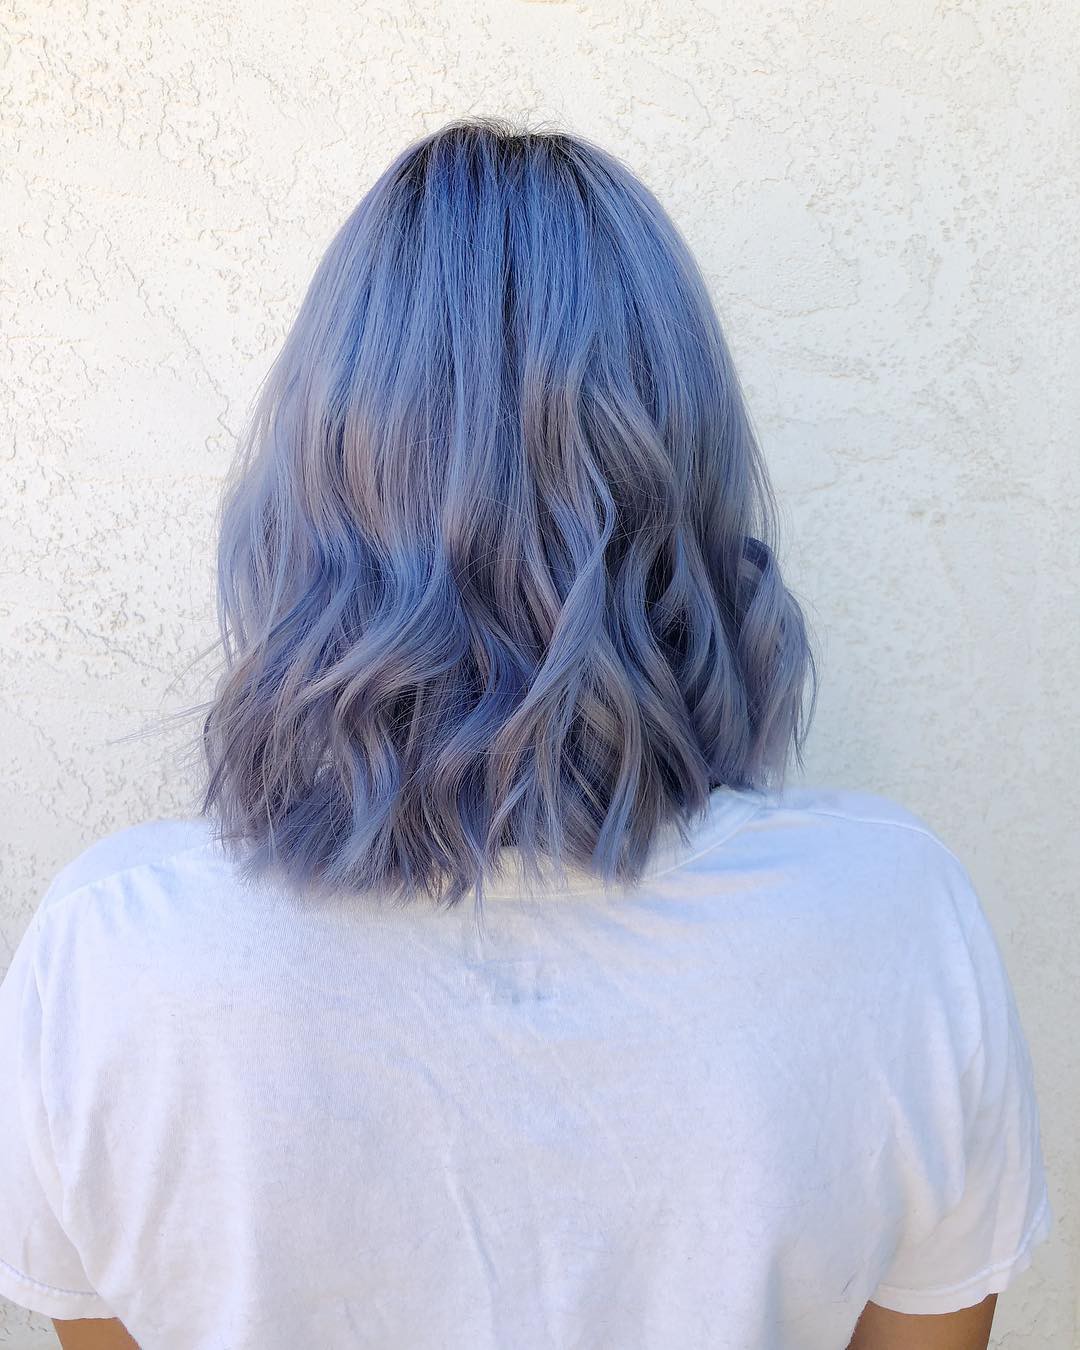 Tóc xanh tím là một xu hướng táo bạo và cá tính trong làm đẹp. Nếu bạn đang tìm kiếm một phong cách mới mẻ và độc đáo cho mái tóc của mình, thì hãy khám phá những hình ảnh về tóc xanh tím. Chắc chắn bạn sẽ bị thu hút và muốn thử ngay kiểu tóc này!